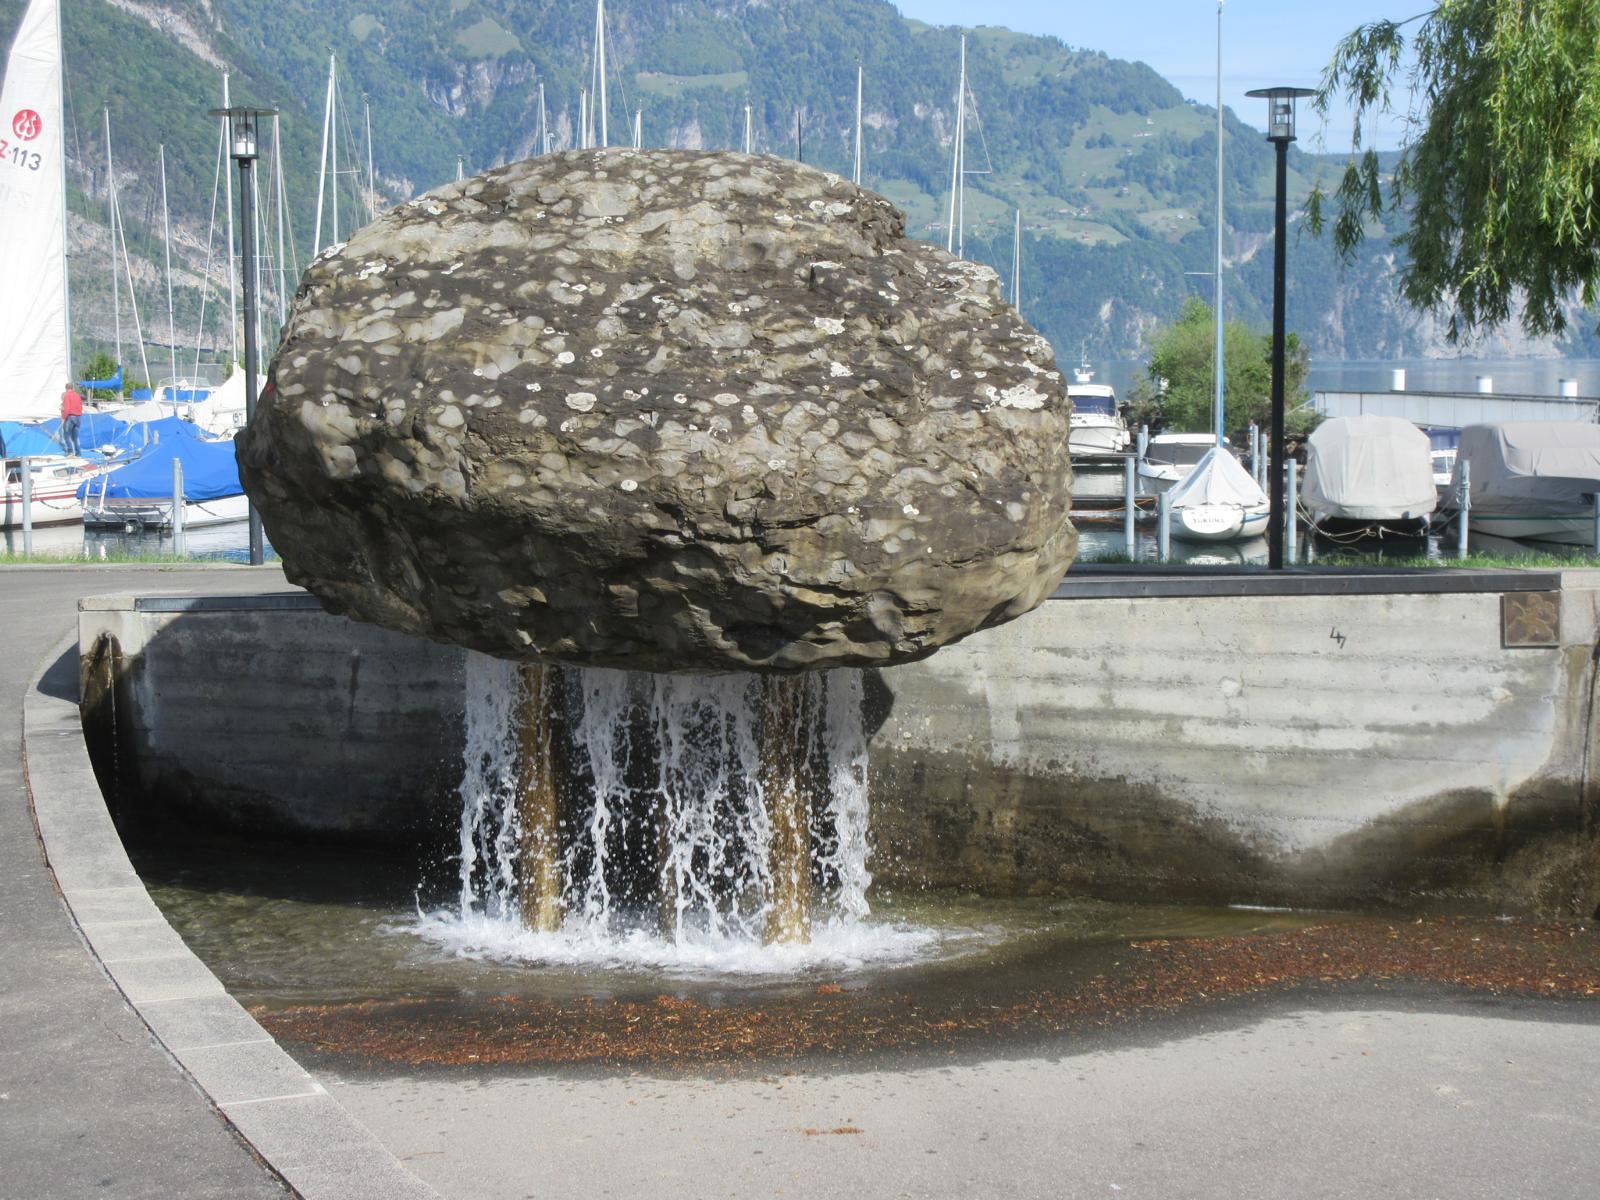 Hafen / Schaffhauser Brunnen *** 1991 *** Beton *** Flysch mit Kalkknollen *** Der Brunnen befindet sich auf dem zur 700-Jahrfeier initiierten "Weg der Schweiz", auf dem Schaffhauser Teilstück.